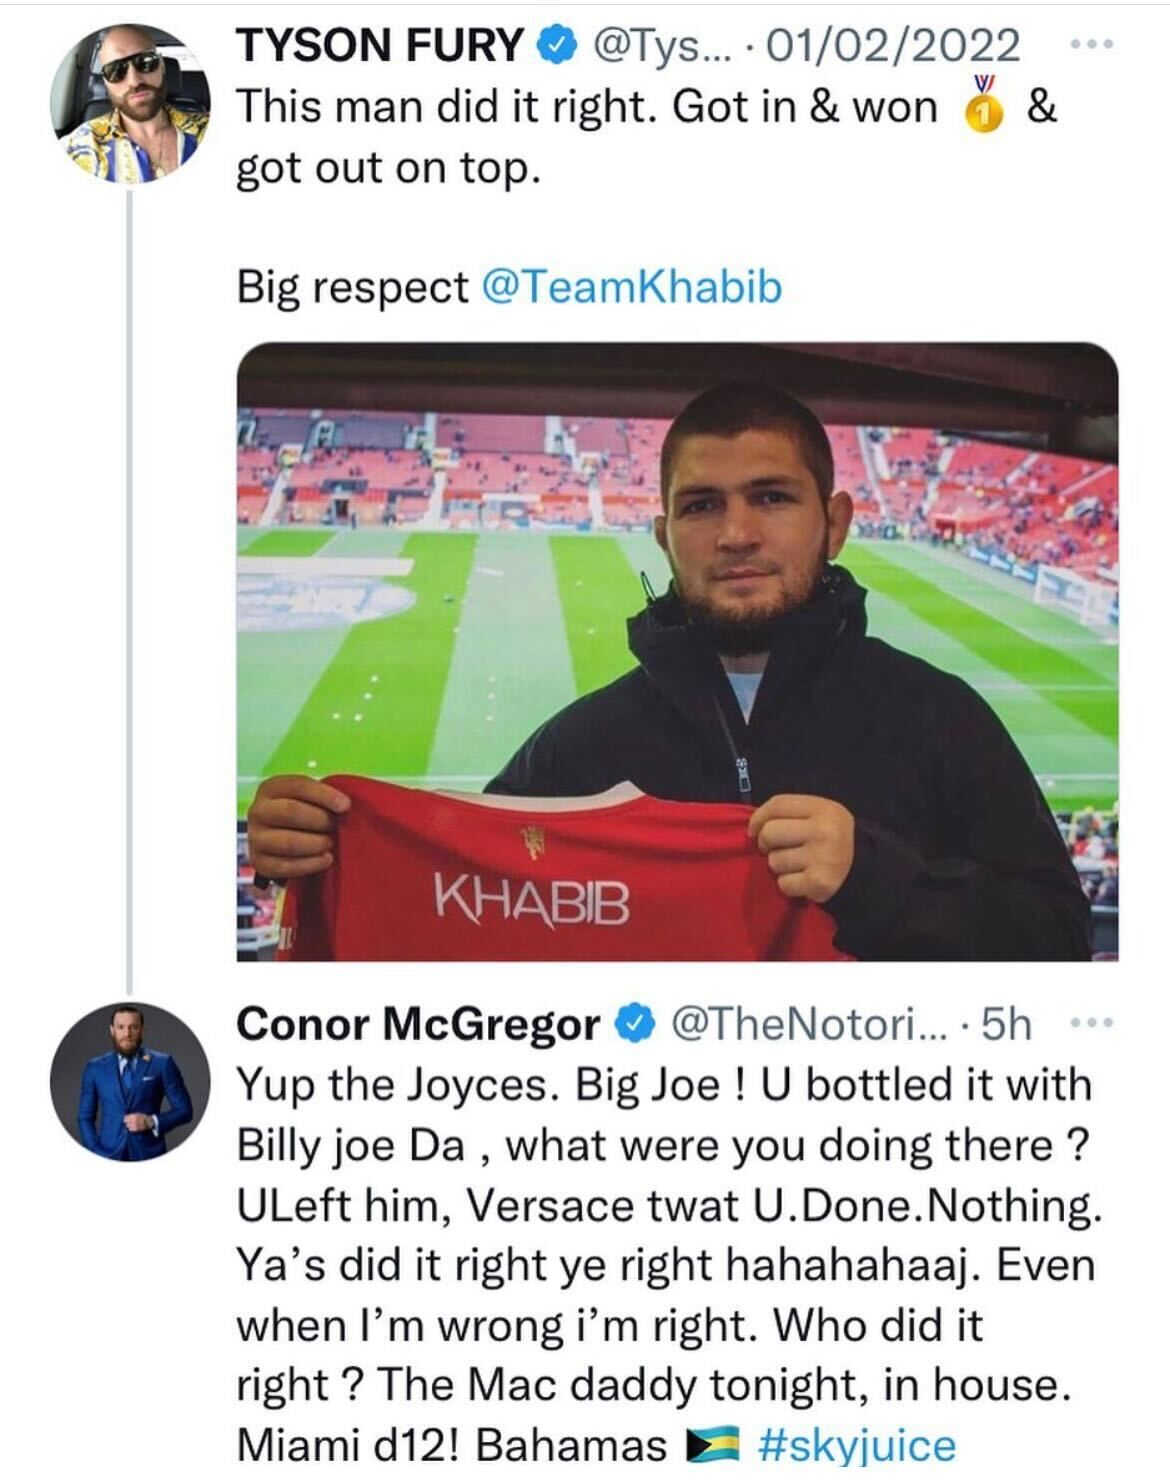 Conor McGregor Tyson Fury beef Twitter spat